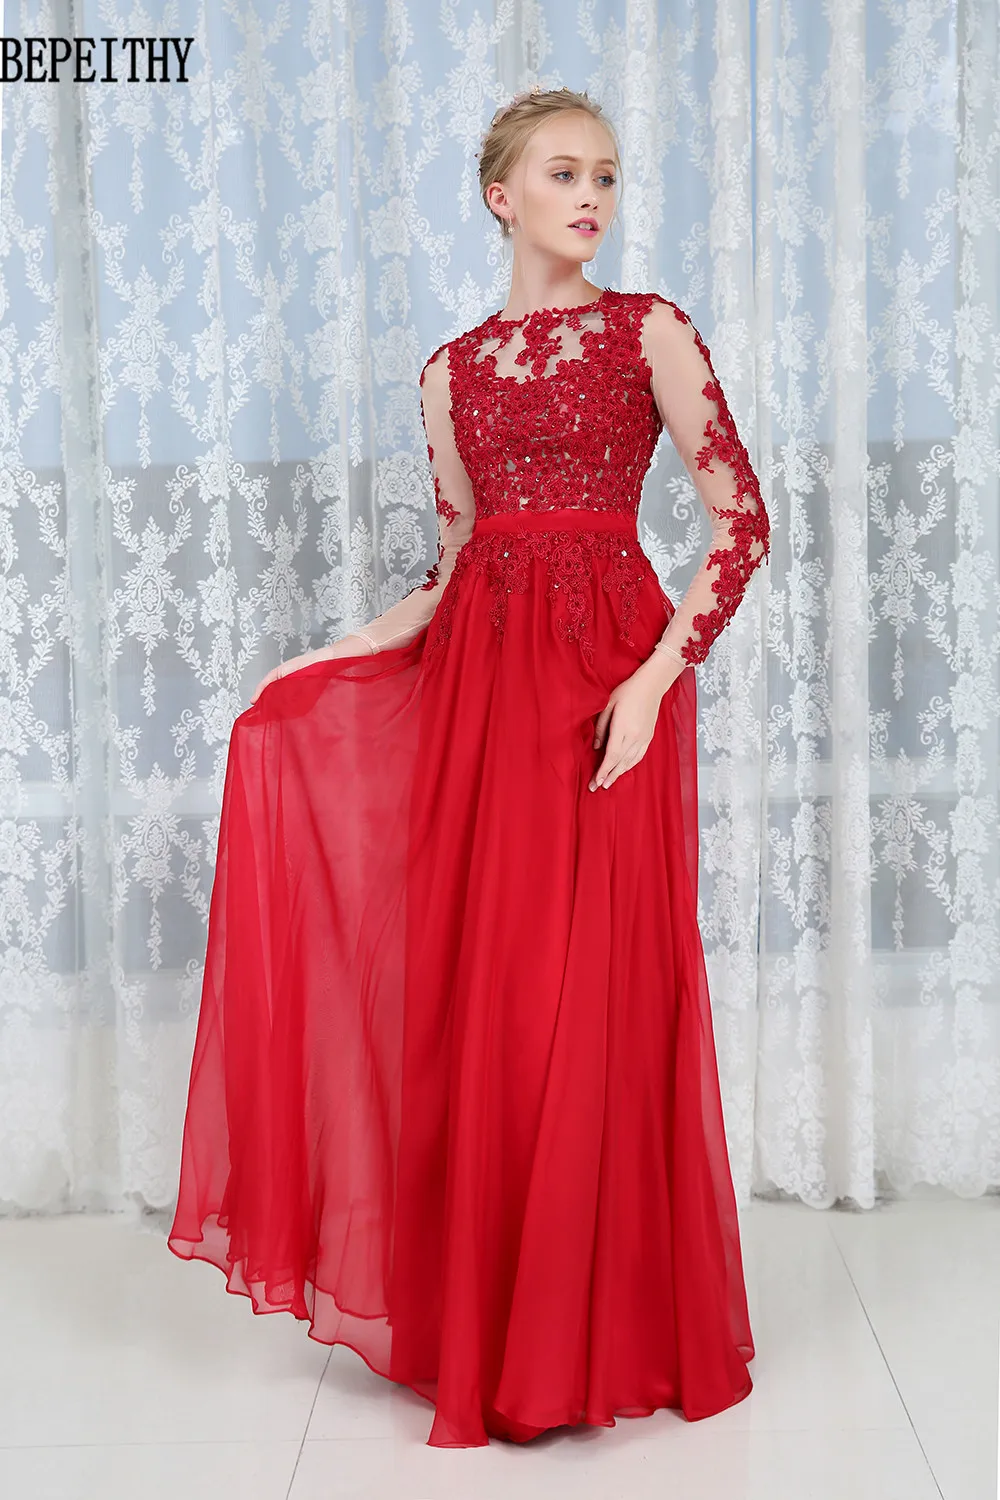 BEPEITHY vestido de festa Vestidos Longo длинное красное вечернее платье Формальные платья Бисероплетение на заказ платье для выпускного вечера новое поступление